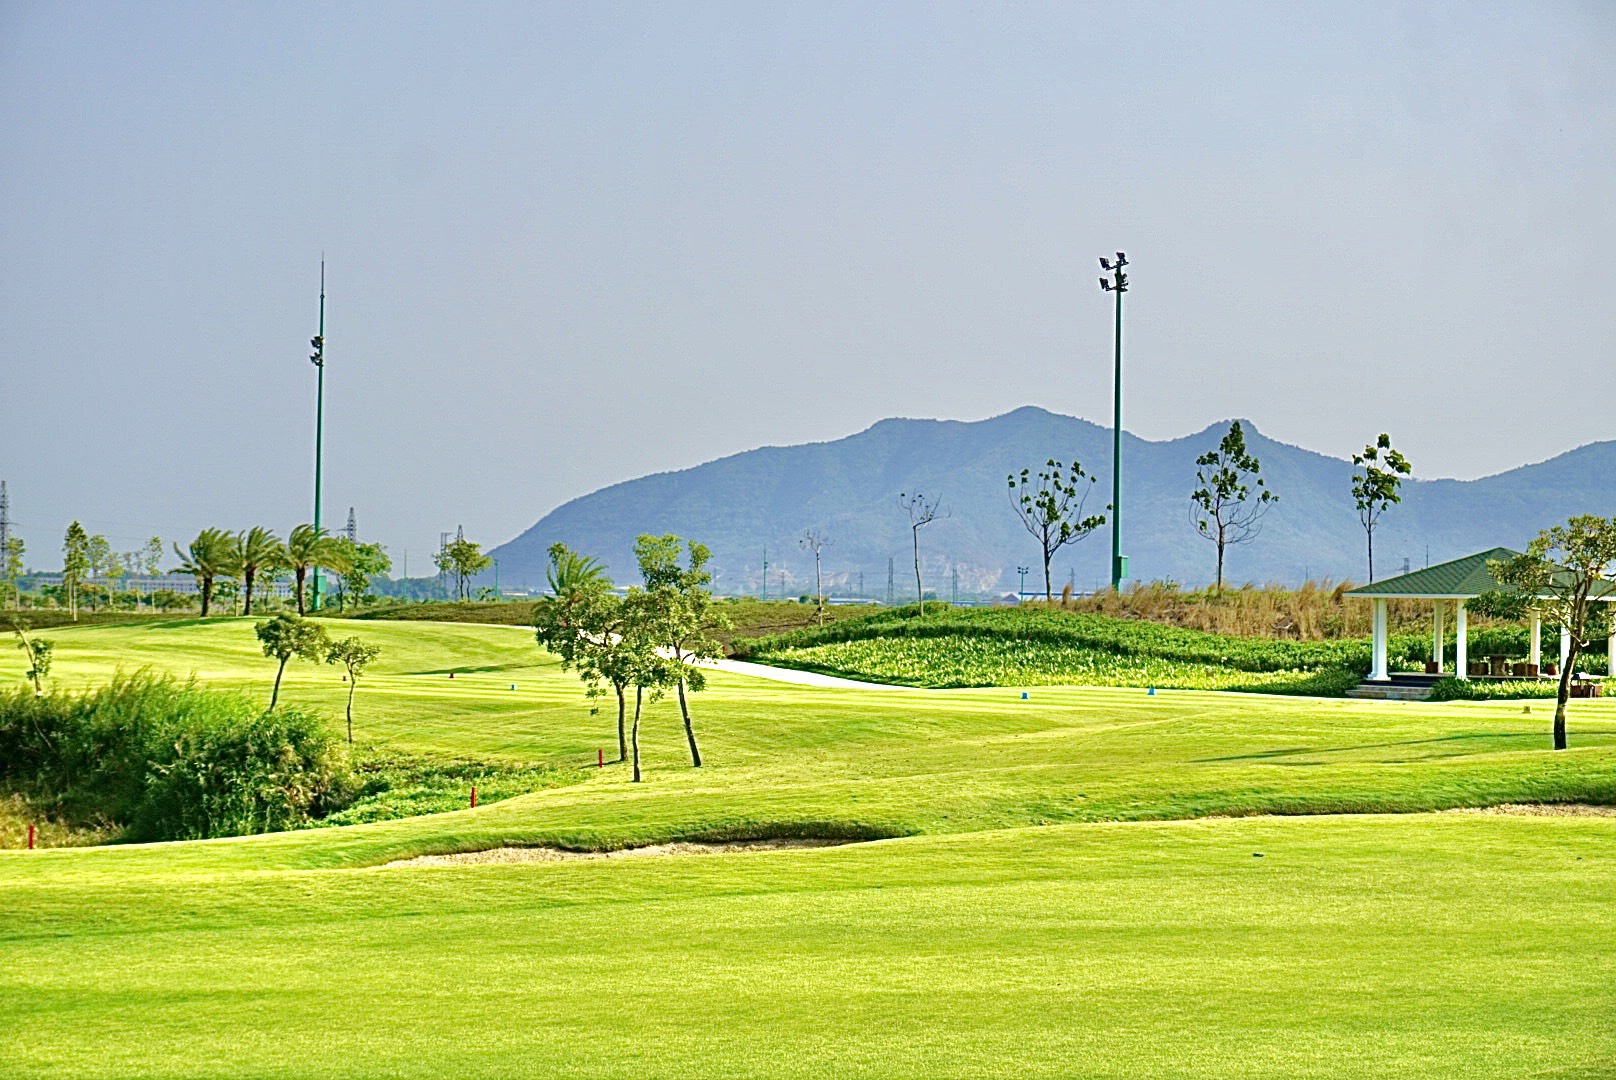 Sân golf Châu Đức Vũng Tàu